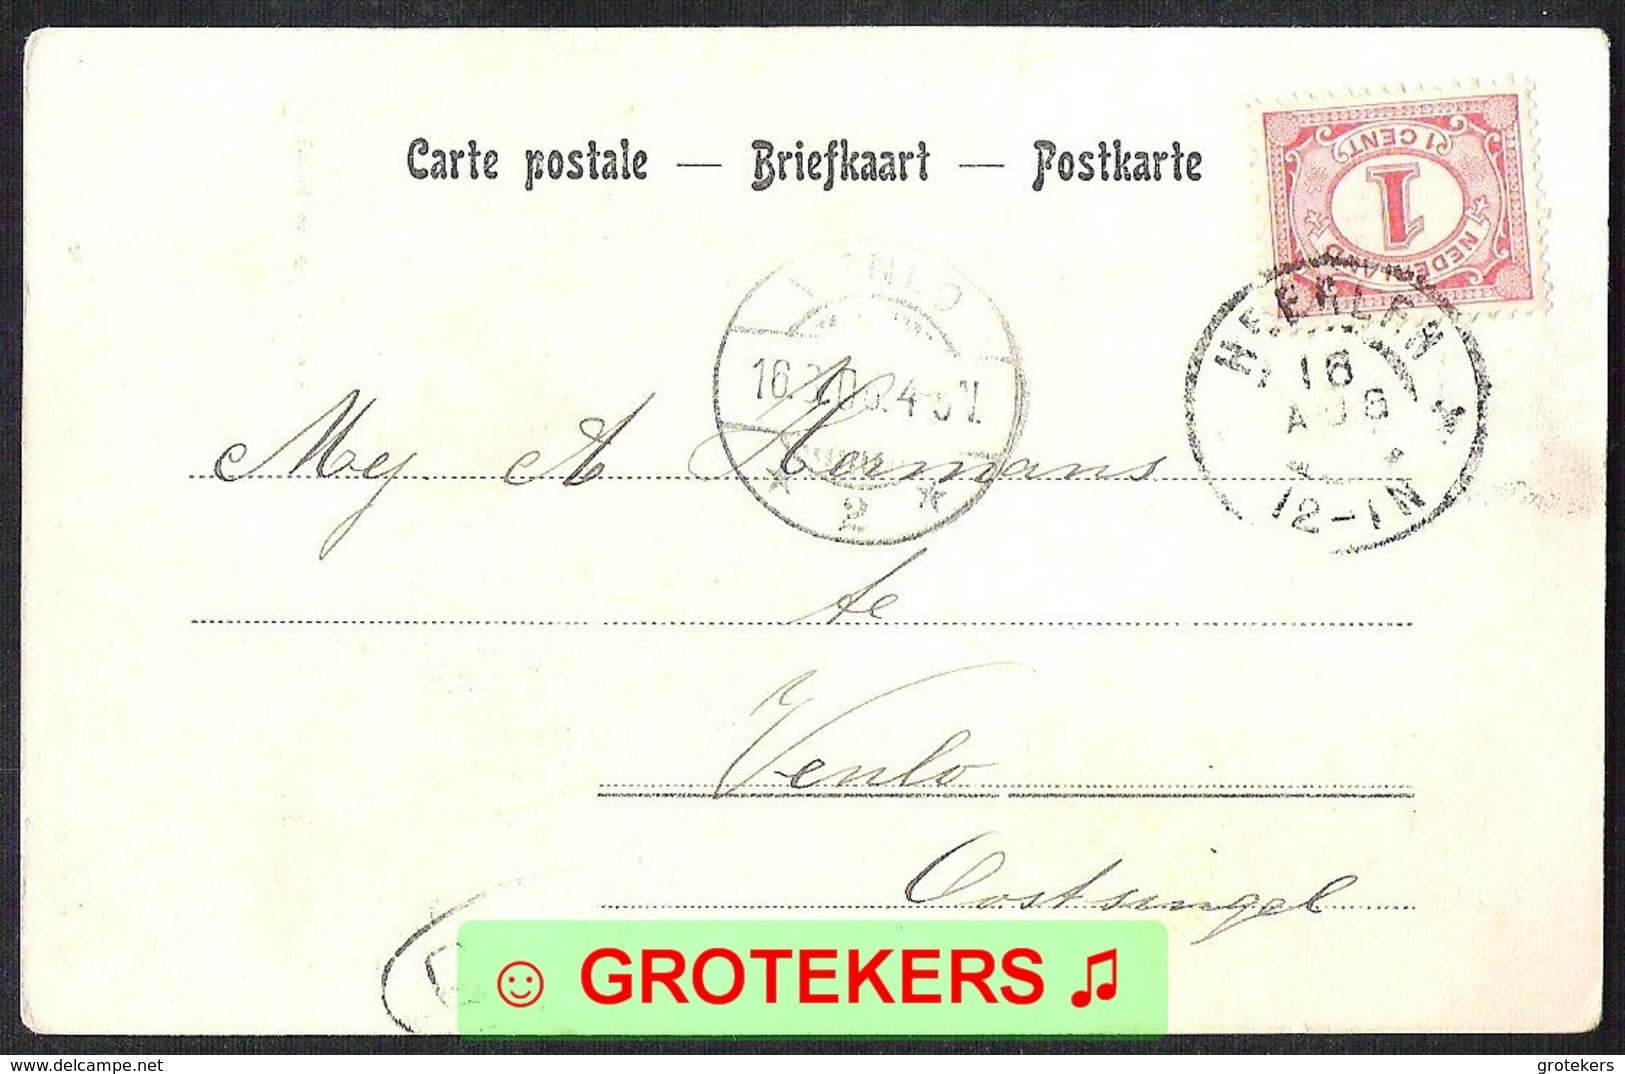 Aankomststempel Venlo 2 Langebalk Met Arcering (LBMN 0063) Op Ansicht VALKENBURG Gezicht Op De Geul 1906 LEES - Storia Postale